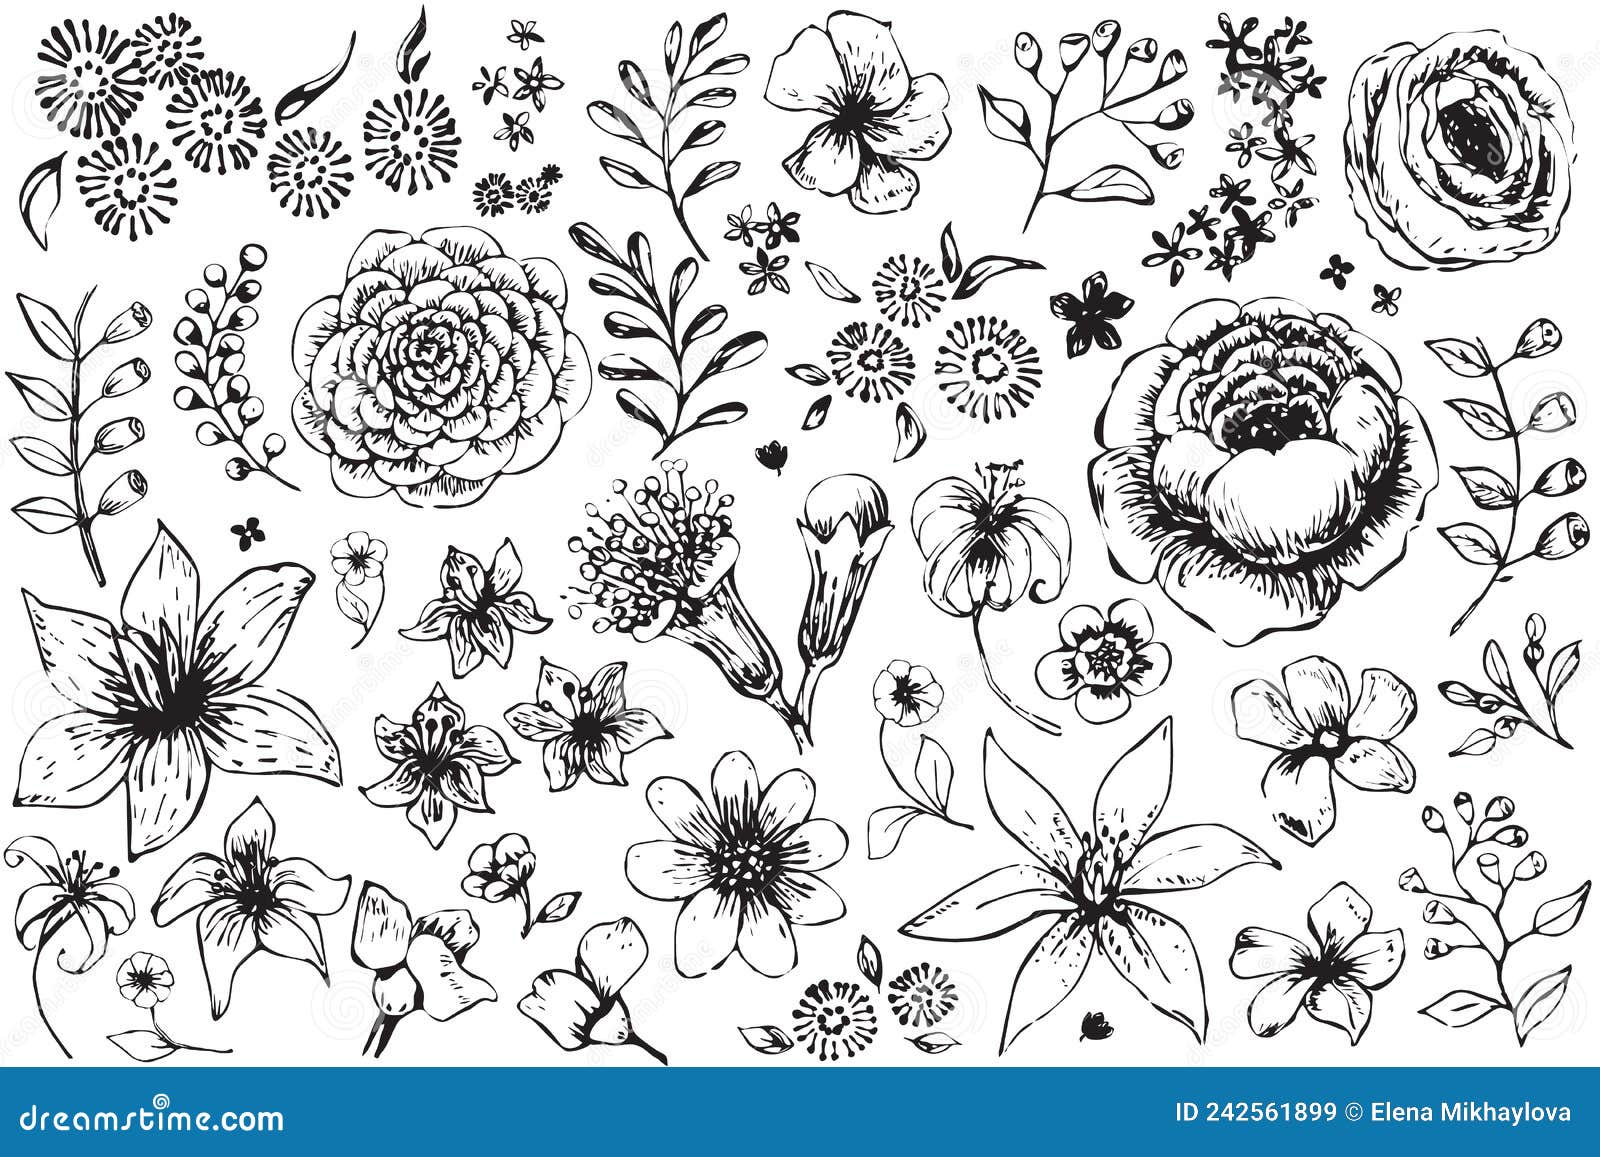 Flower Outlines on White Background Stock Vector - Illustration of ...